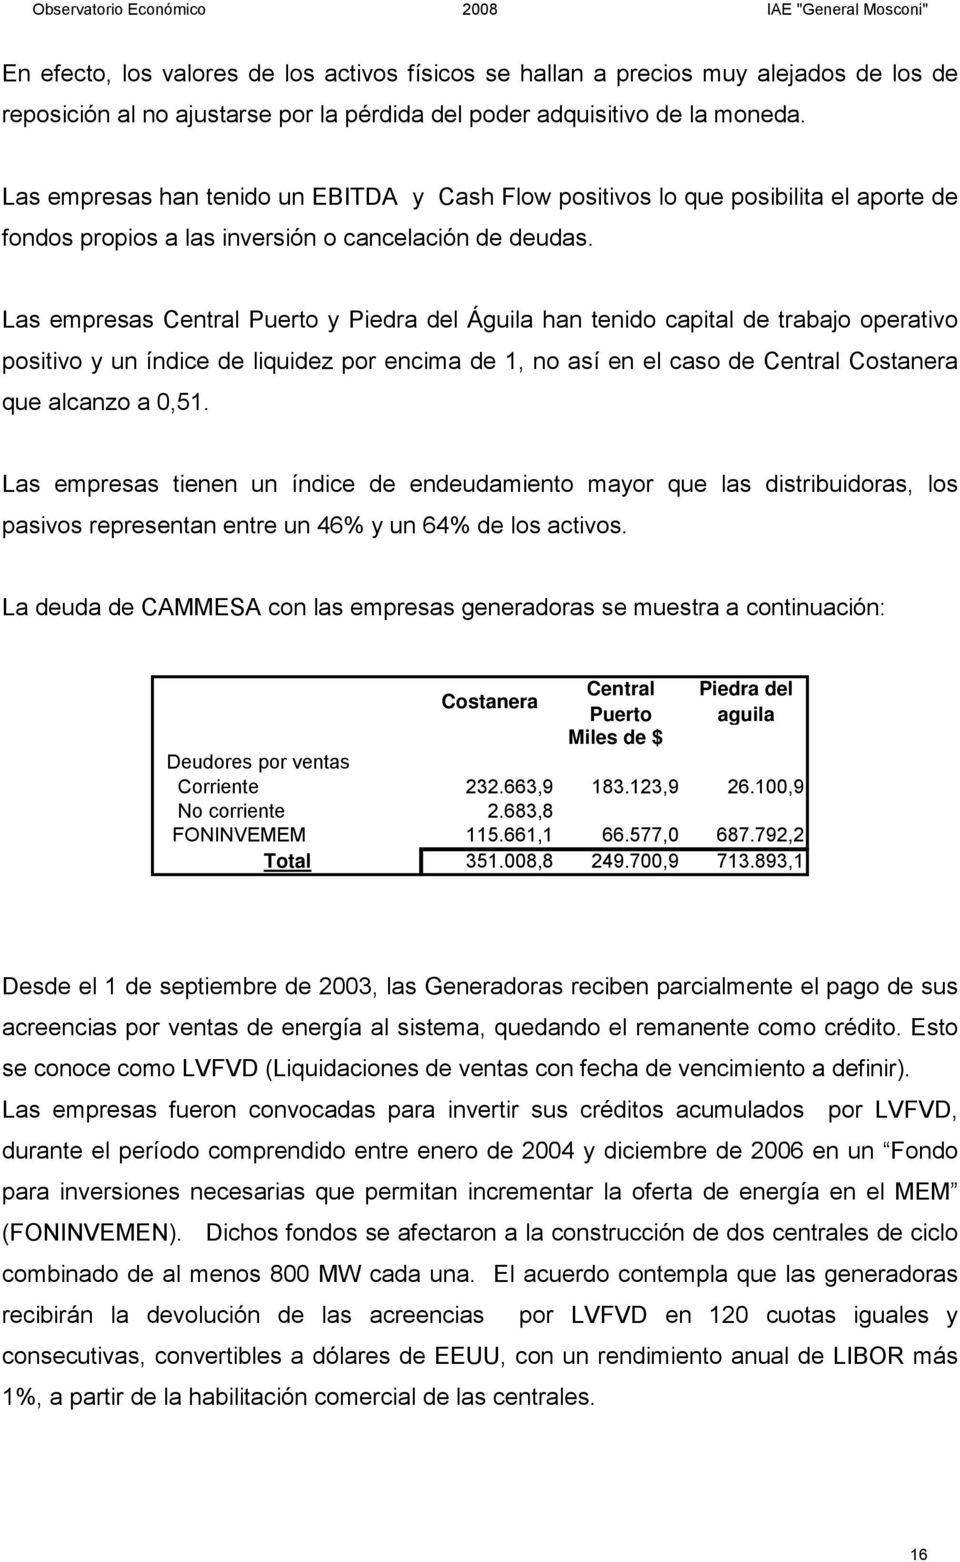 Las empresas Central Puerto y Piedra del Águila han tenido capital de trabajo operativo positivo y un índice de liquidez por encima de 1, no así en el caso de Central Costanera que alcanzo a 0,51.